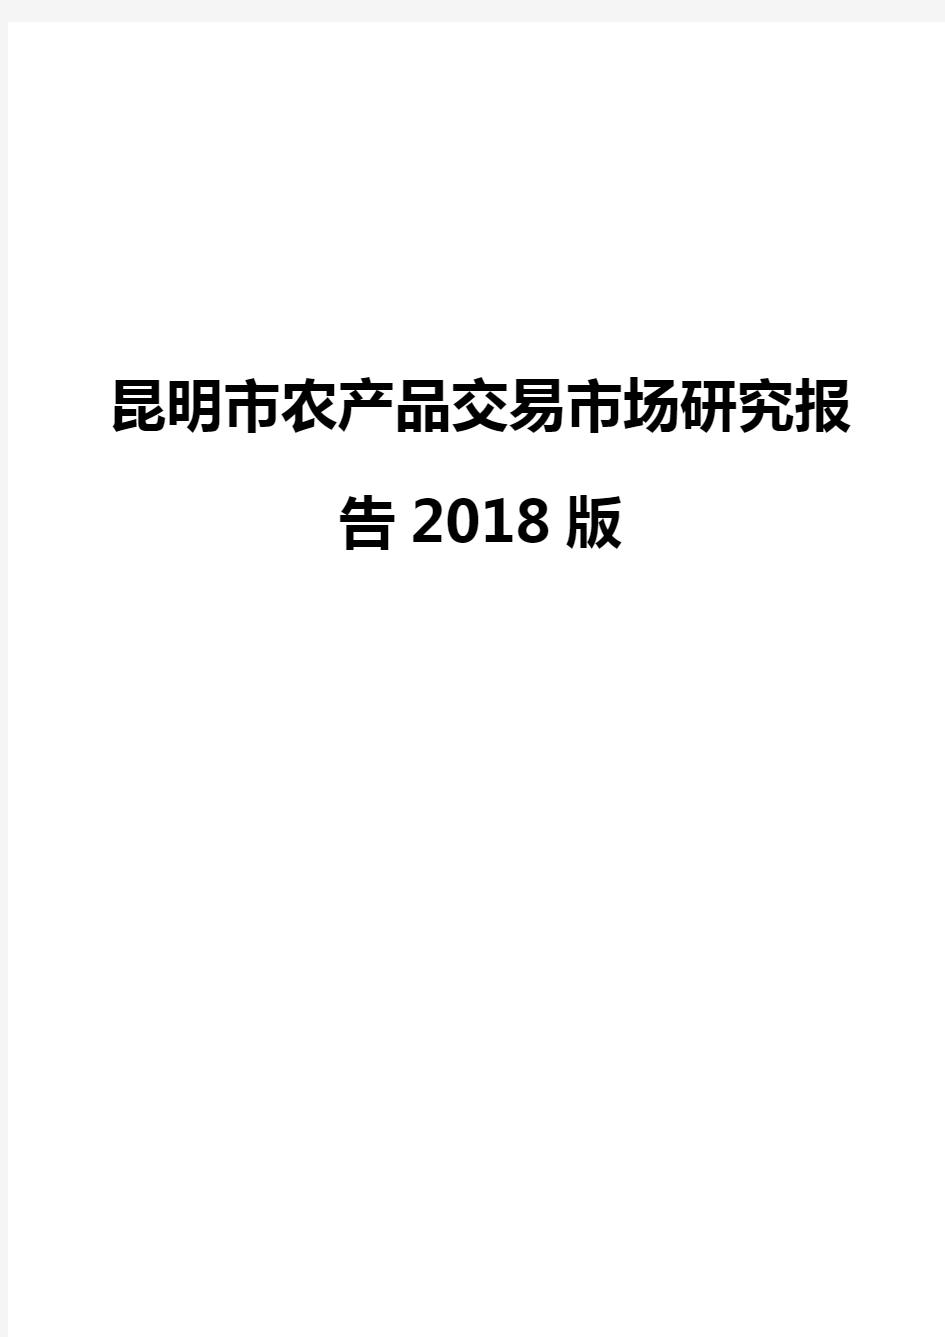 昆明市农产品交易市场研究报告2018版